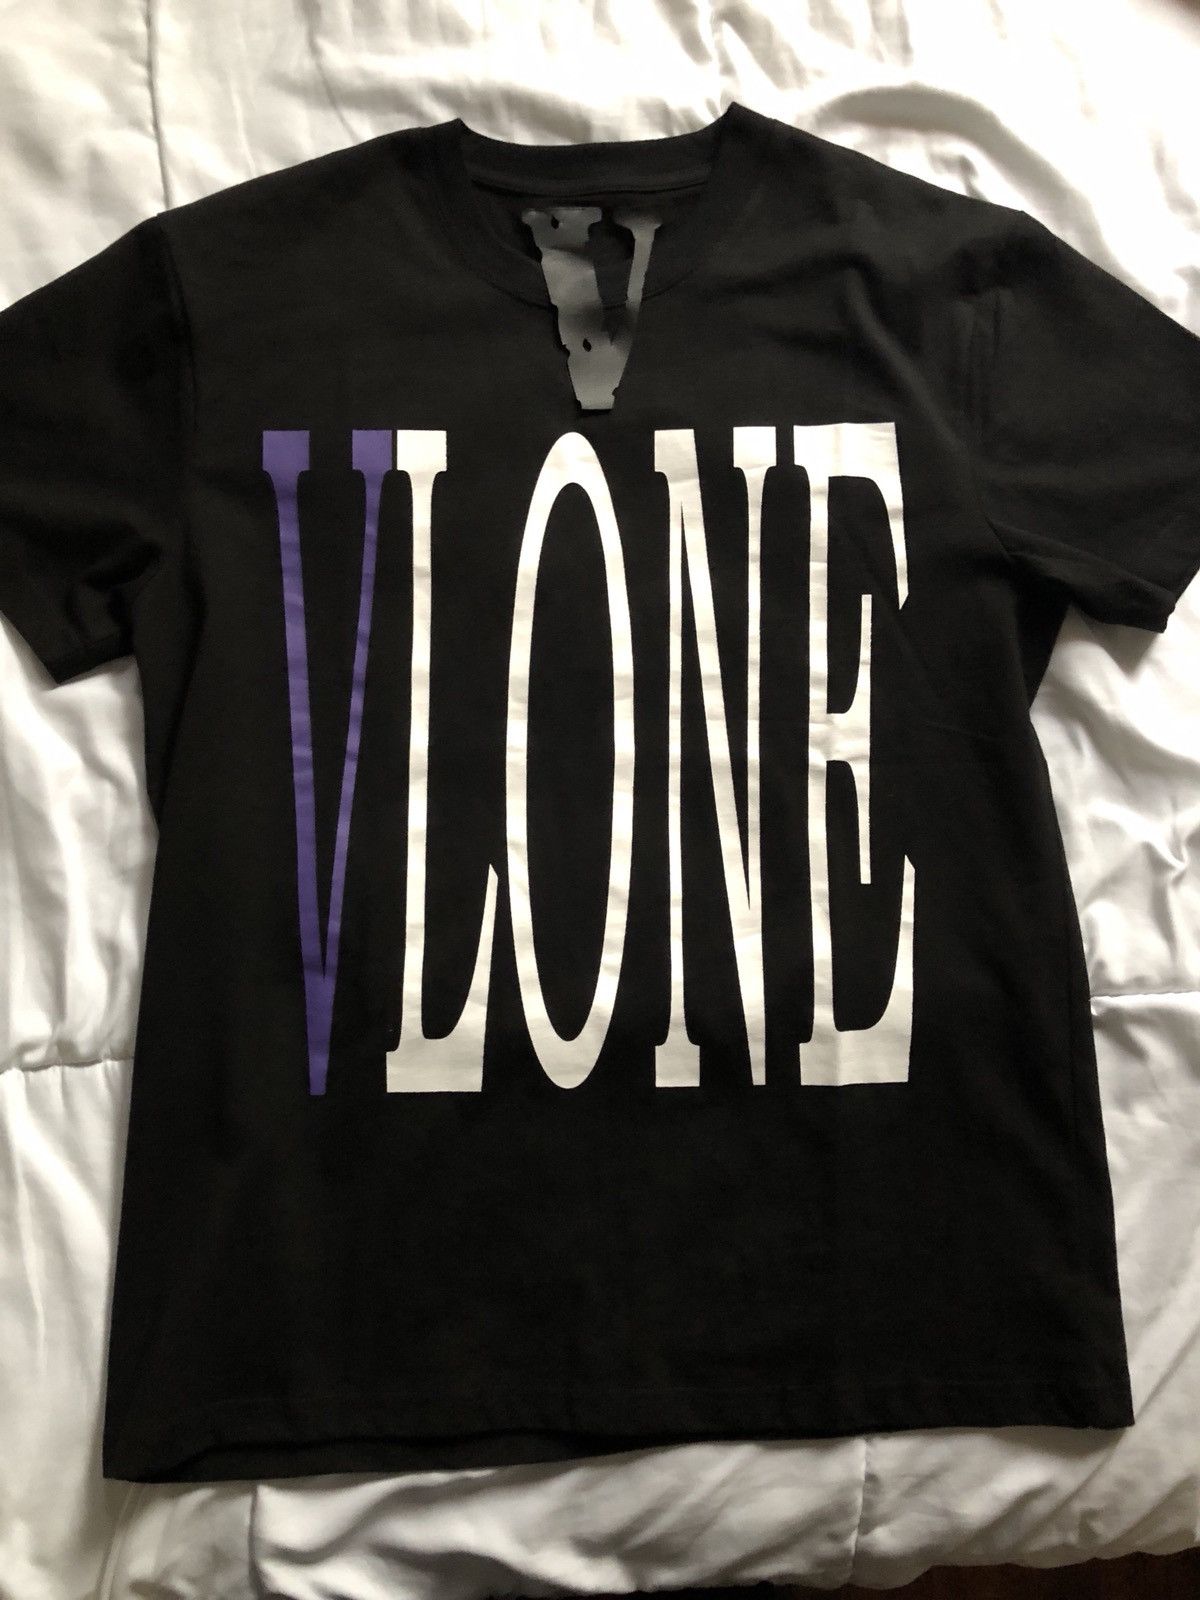 Vlone Vlone Basic T-shirts | Grailed